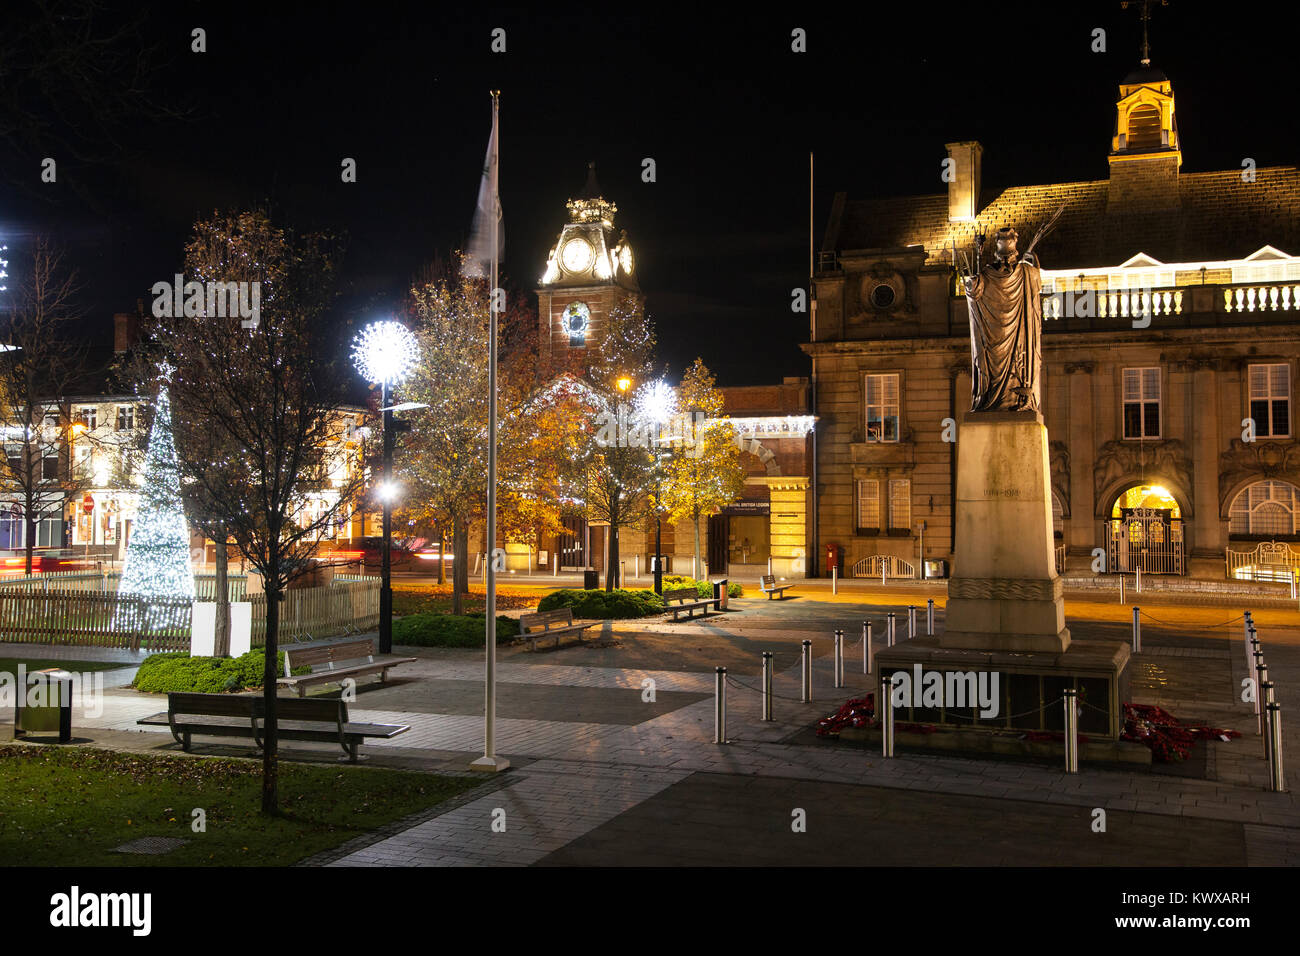 El centro de la ciudad de Crewe Cheshire en el tiempo de Navidad iluminado árbol de Navidad con luces y mostrando el memorial de guerra edificios municipales también el ayuntamiento Foto de stock